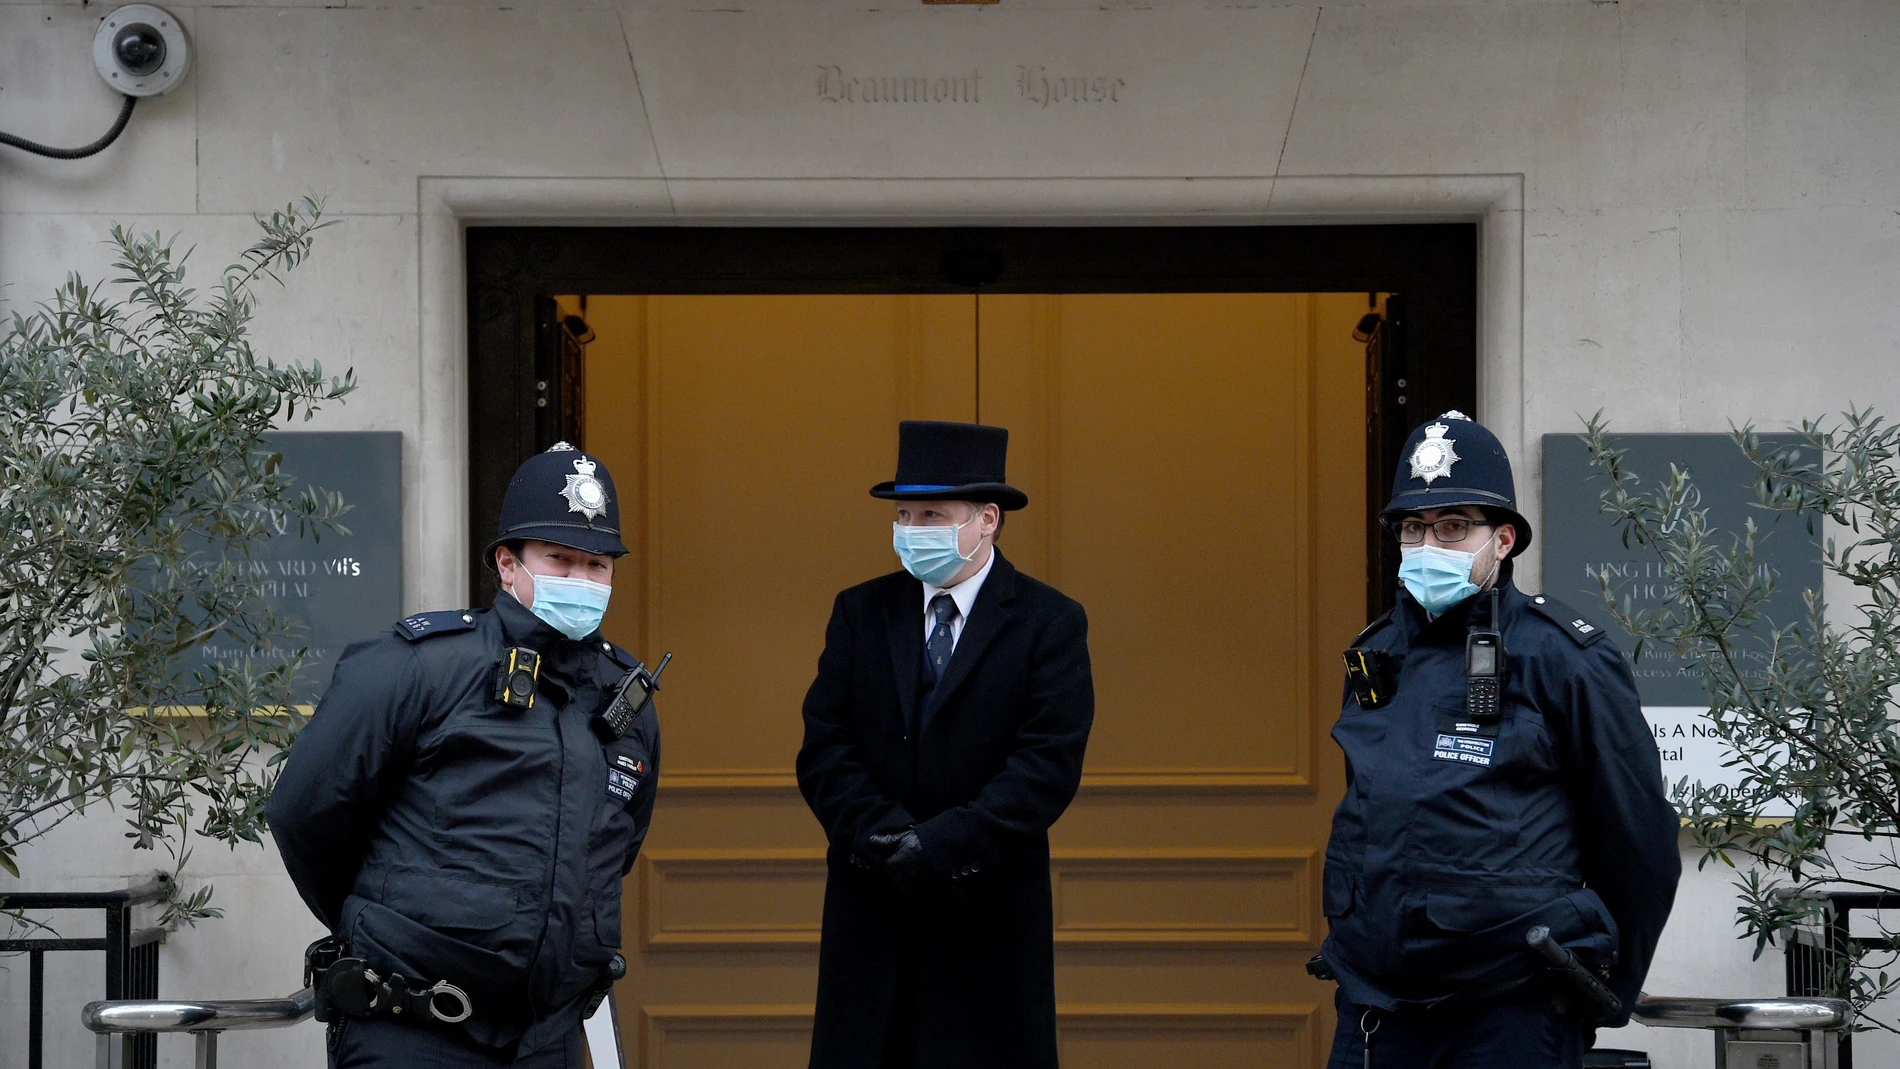 Las Fuerzas de Seguridad hacen guardia en la entrada del hospital Edward VII, donde está ingresado el duque de Edimburgo